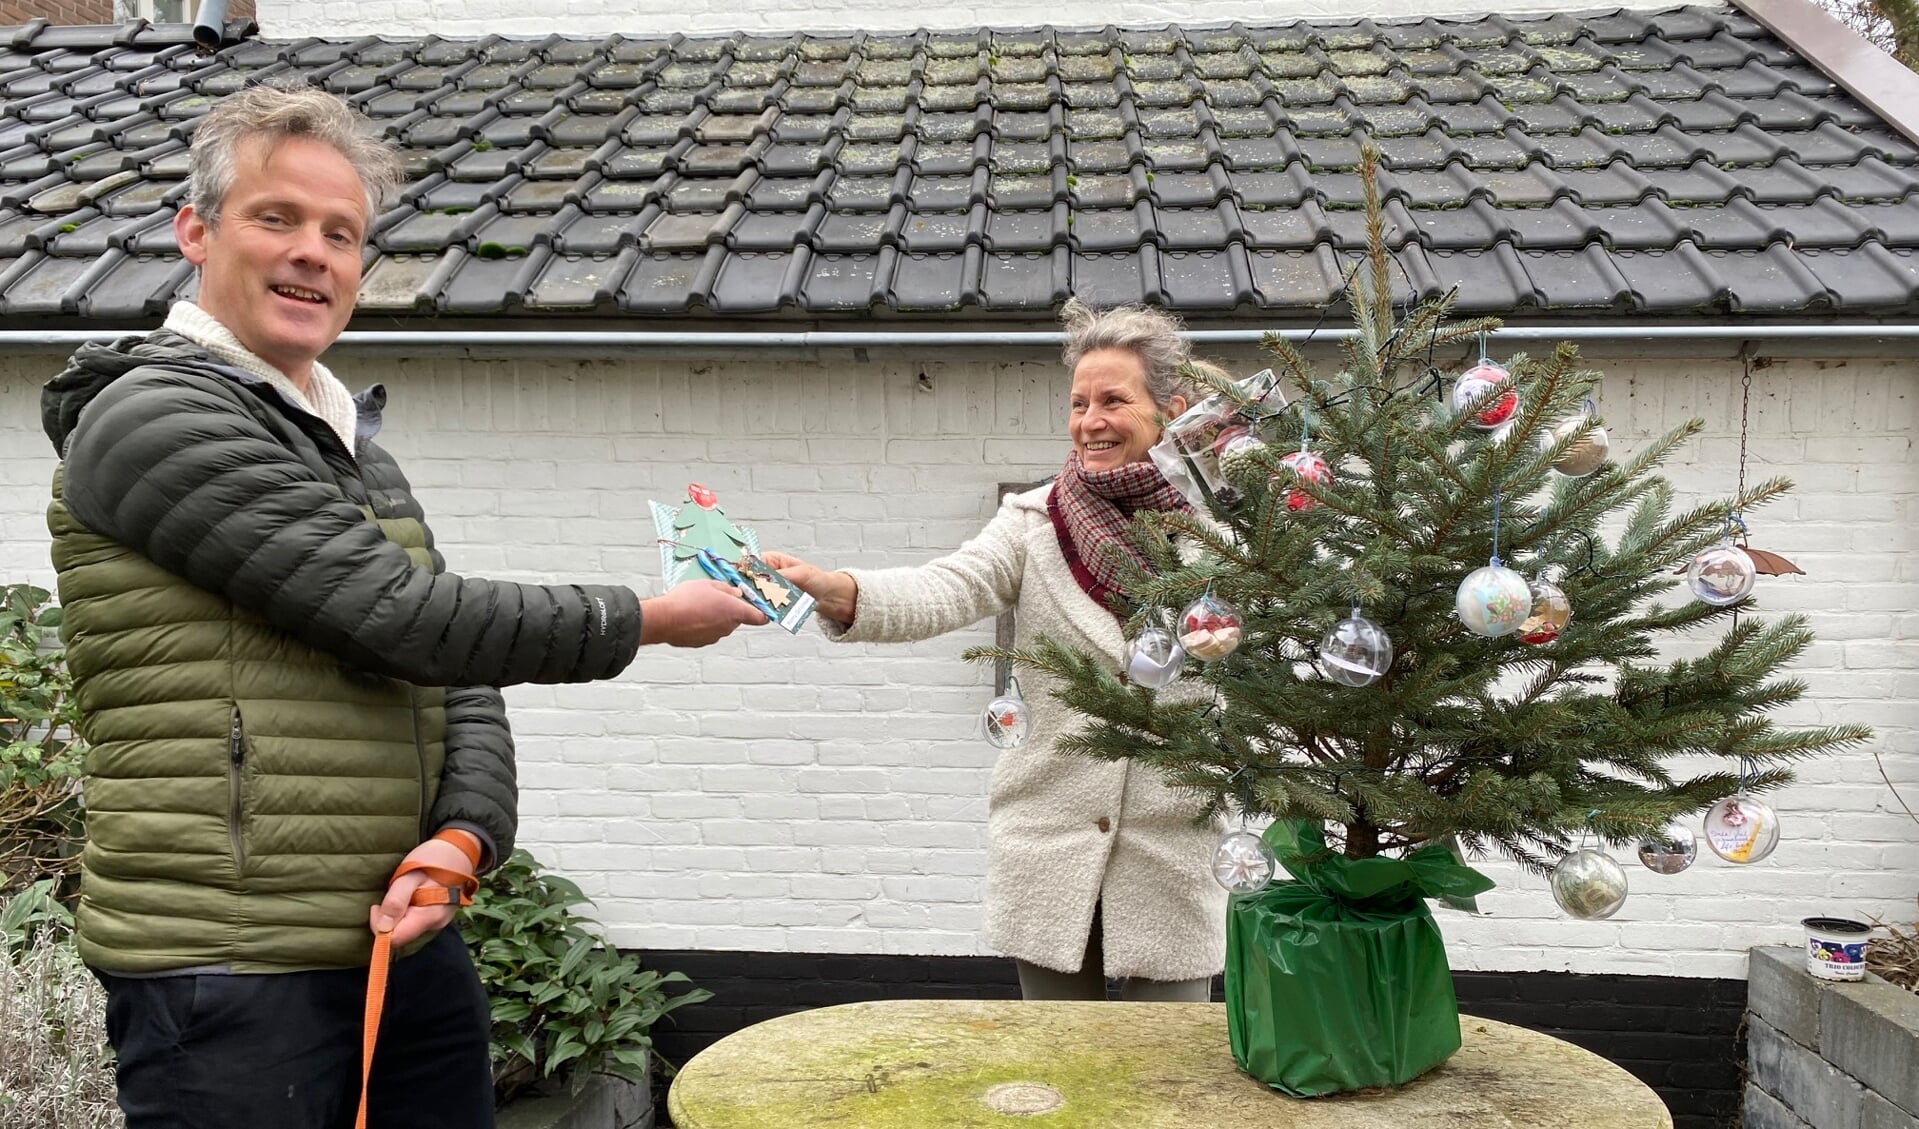 Vestinggouverneur Jan Willen den Beste reikt de prijs uit aan Monique van de Ven voor haar wensboom